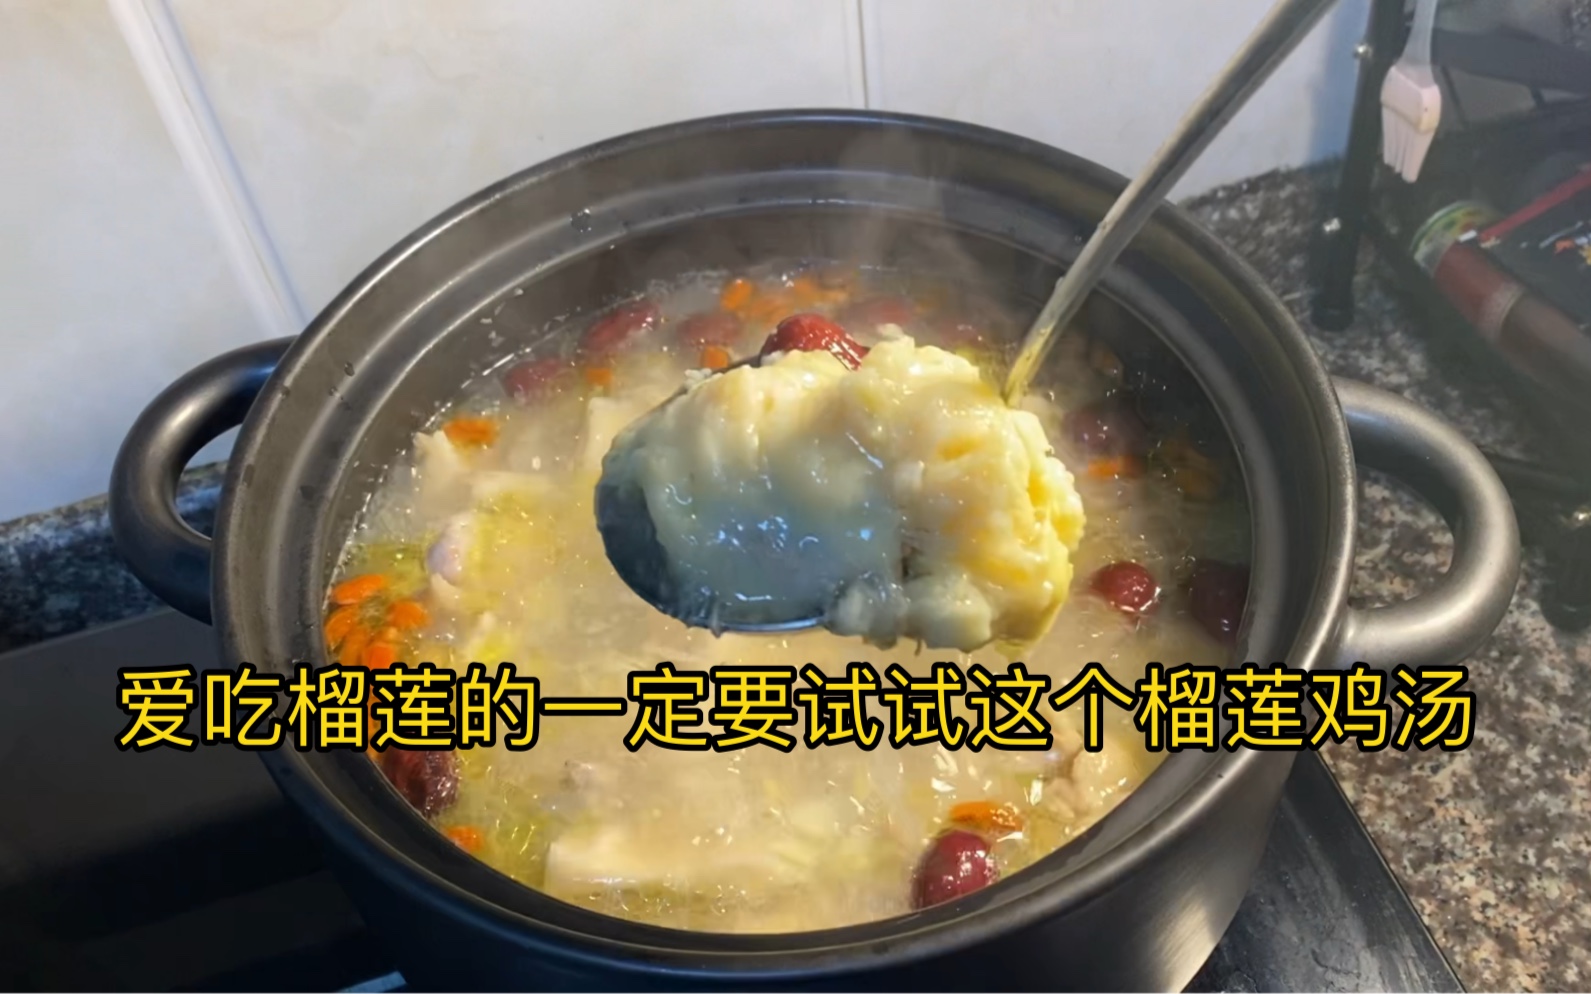 爱吃榴莲的一定要试试这个榴莲鸡汤，汤很鲜美哦！